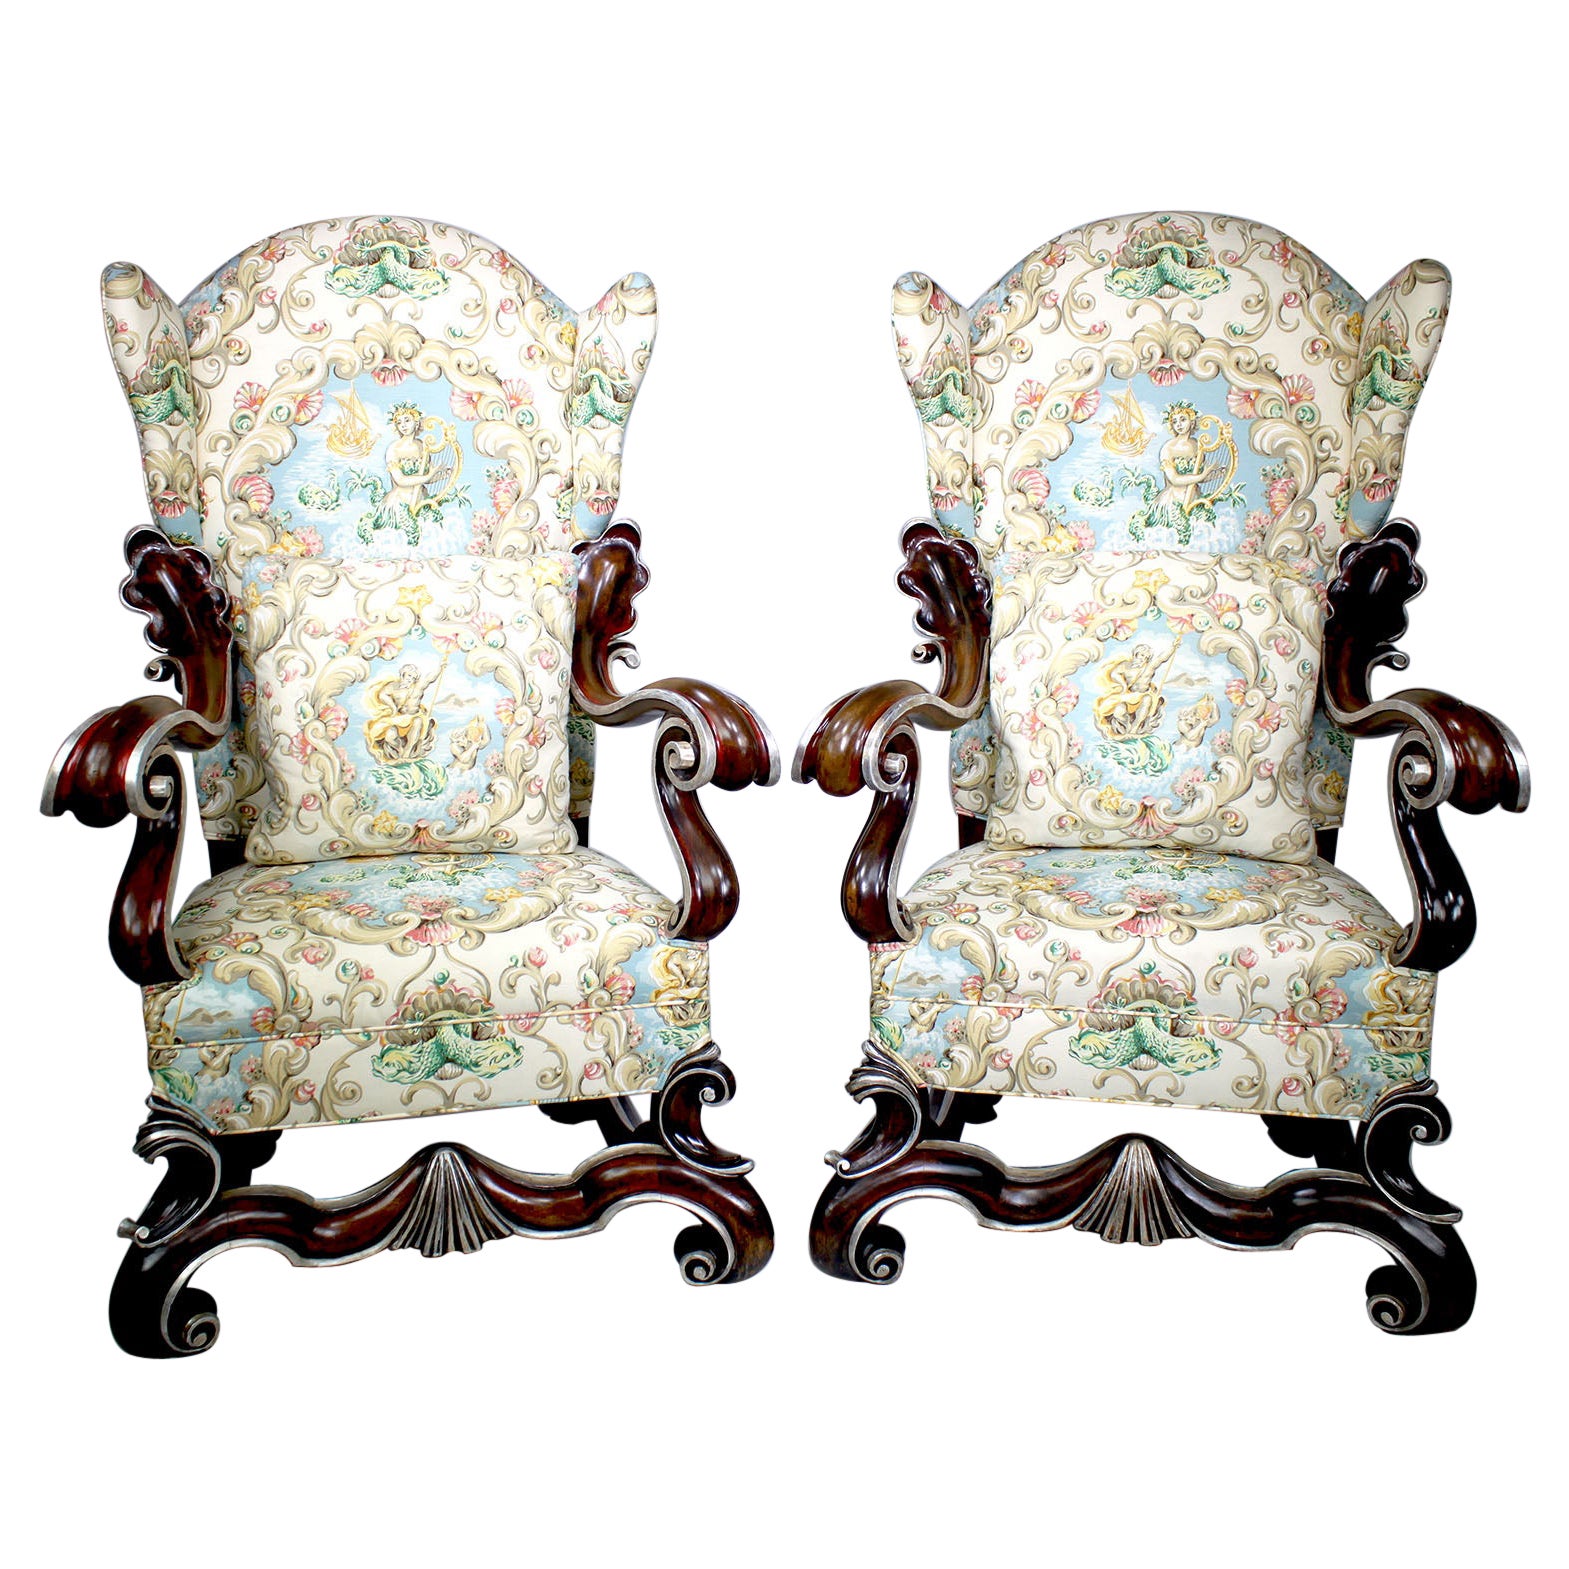 Grande paire de fauteuils trônes ailés de style baroque en noyer et feuilles de soie de soie